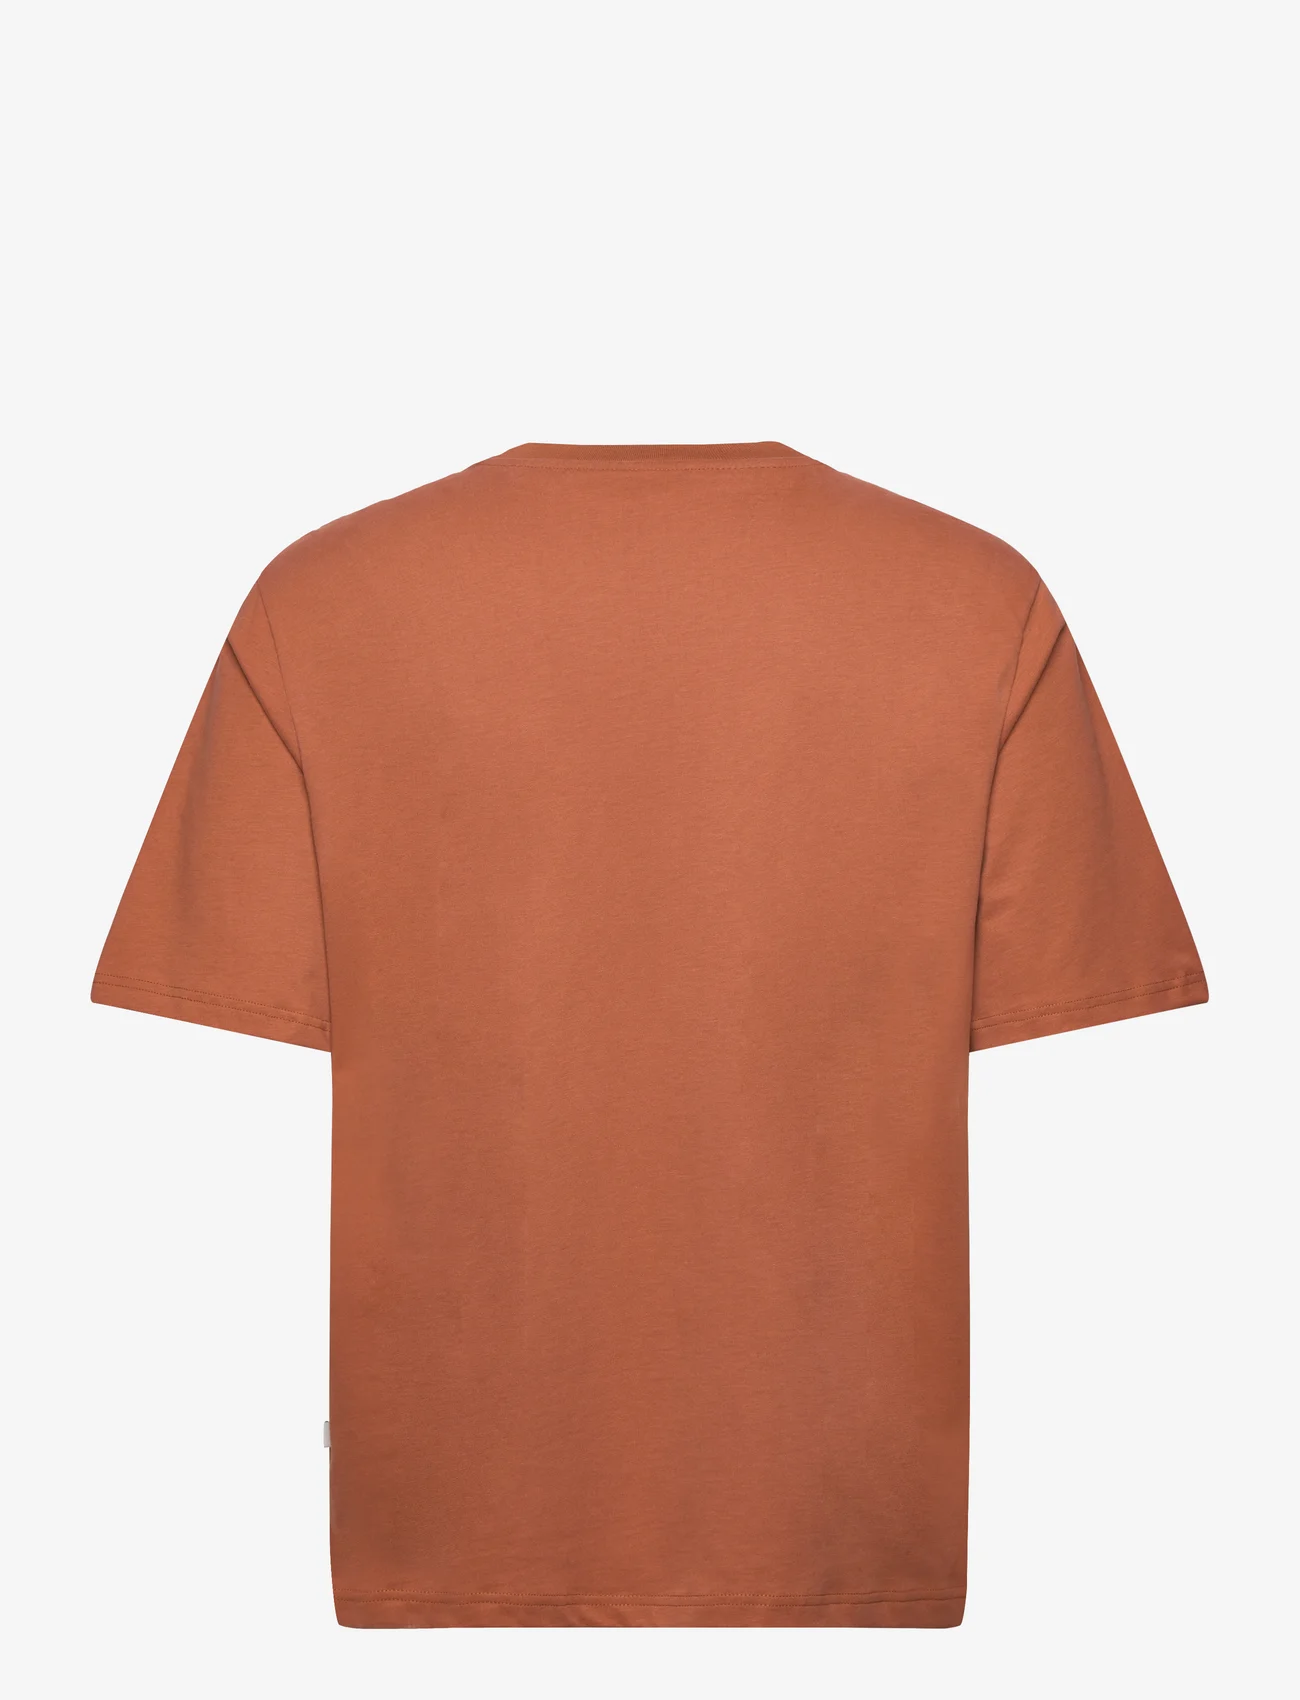 Resteröds - Mid Sleeve T-Shirt GOTS. - laagste prijzen - brun - 1